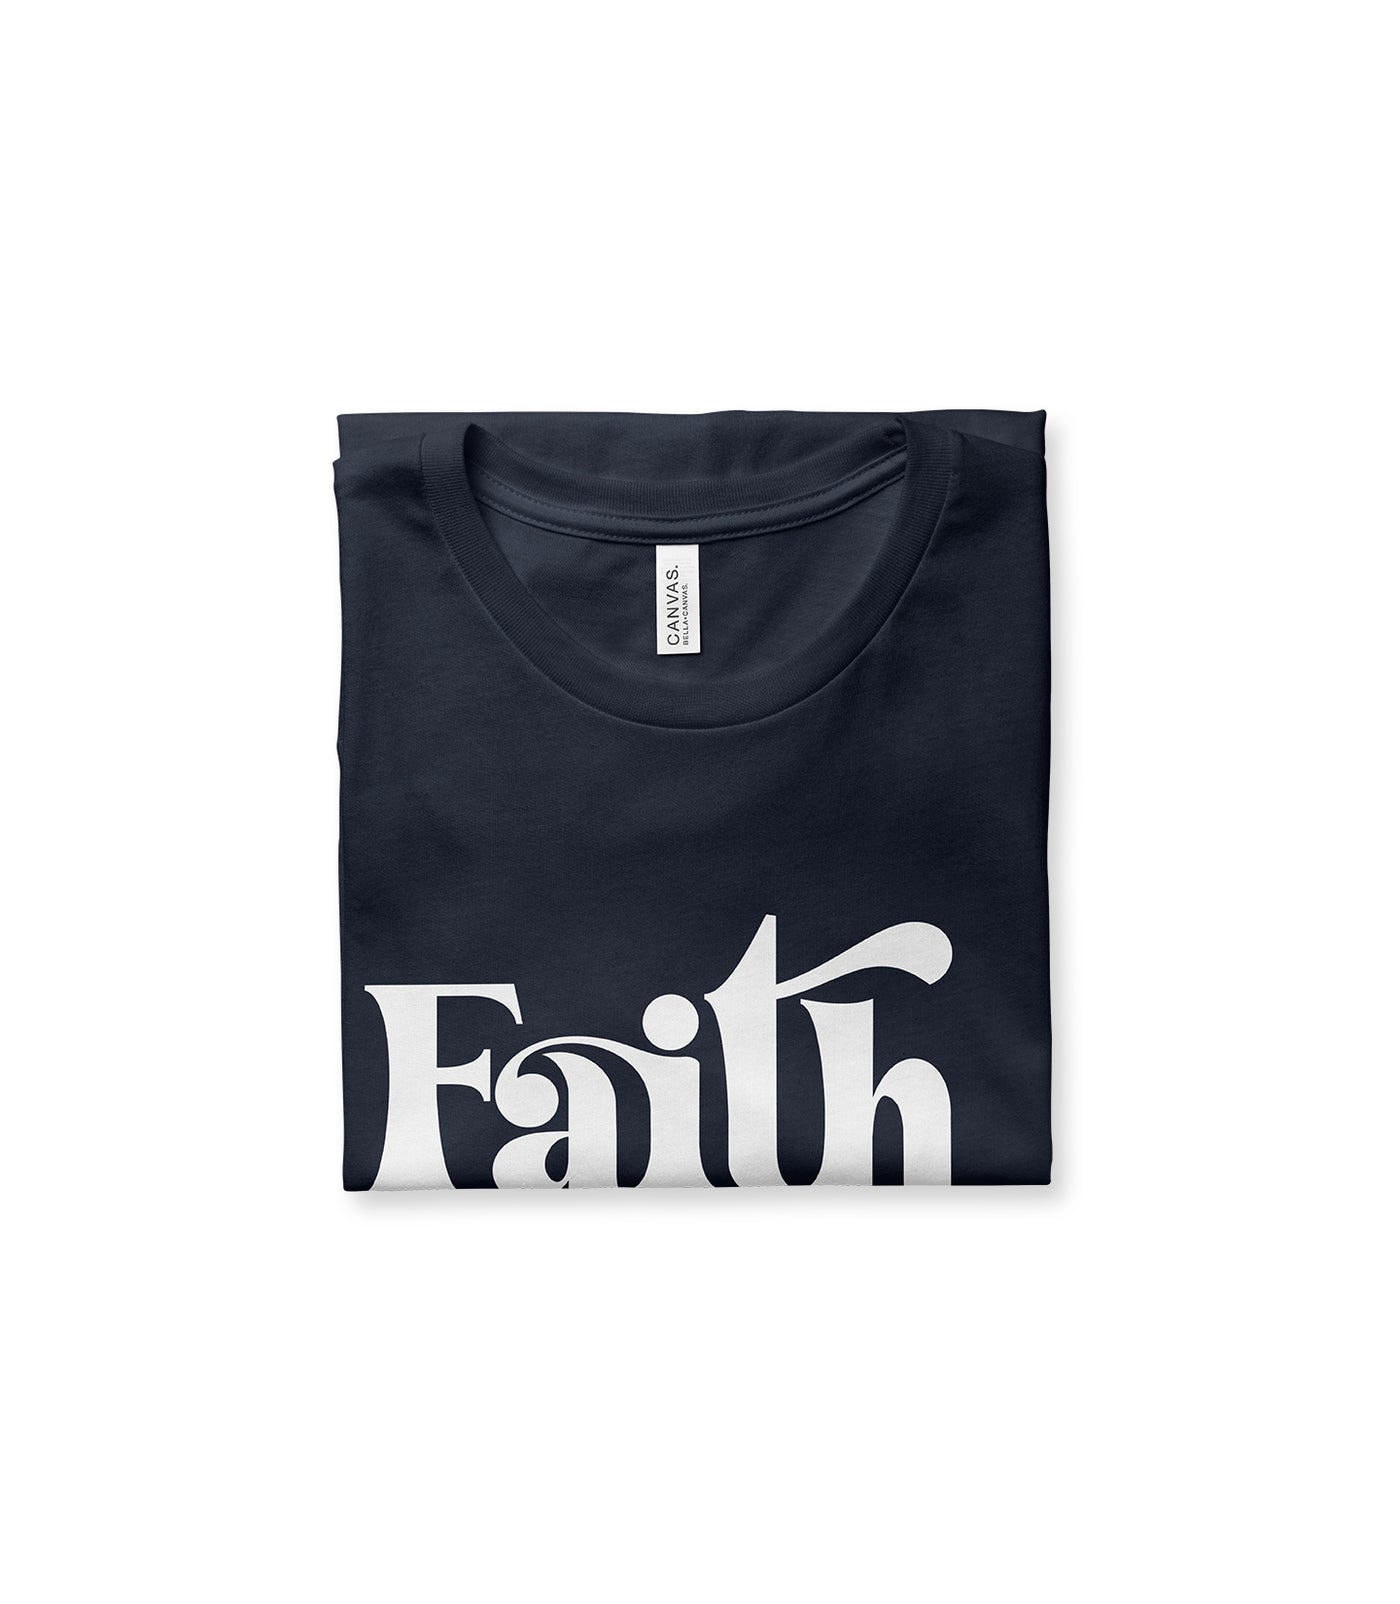 Faith Tee